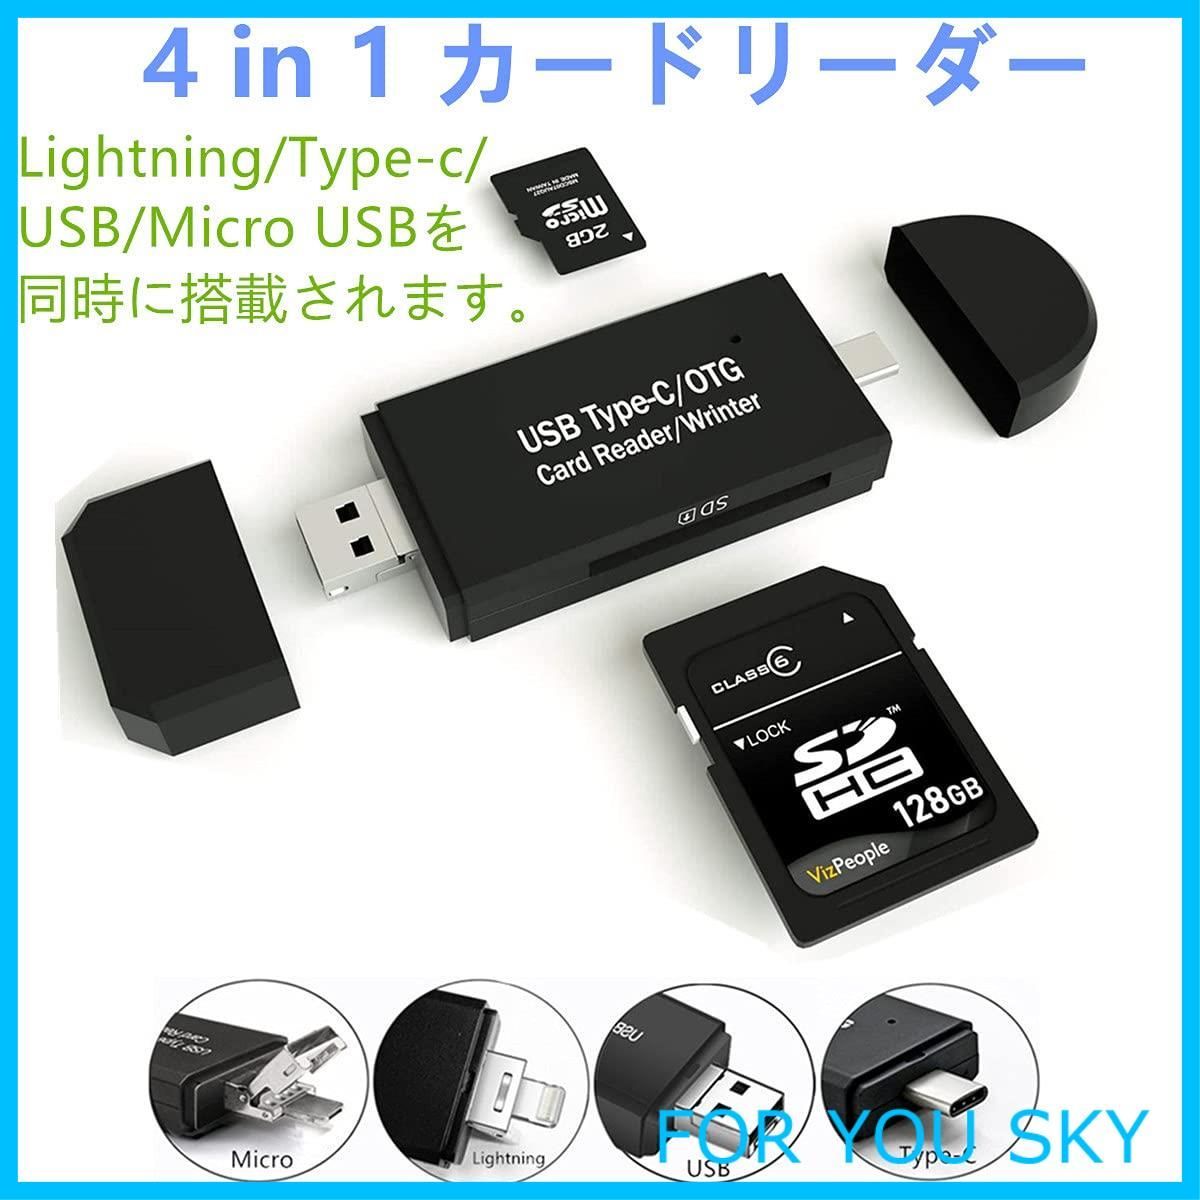 Lazos マルチカードリーダー(Lightning Type-C USBプラグ) L-MCR-LX6 テレビで話題 - メモリーカード